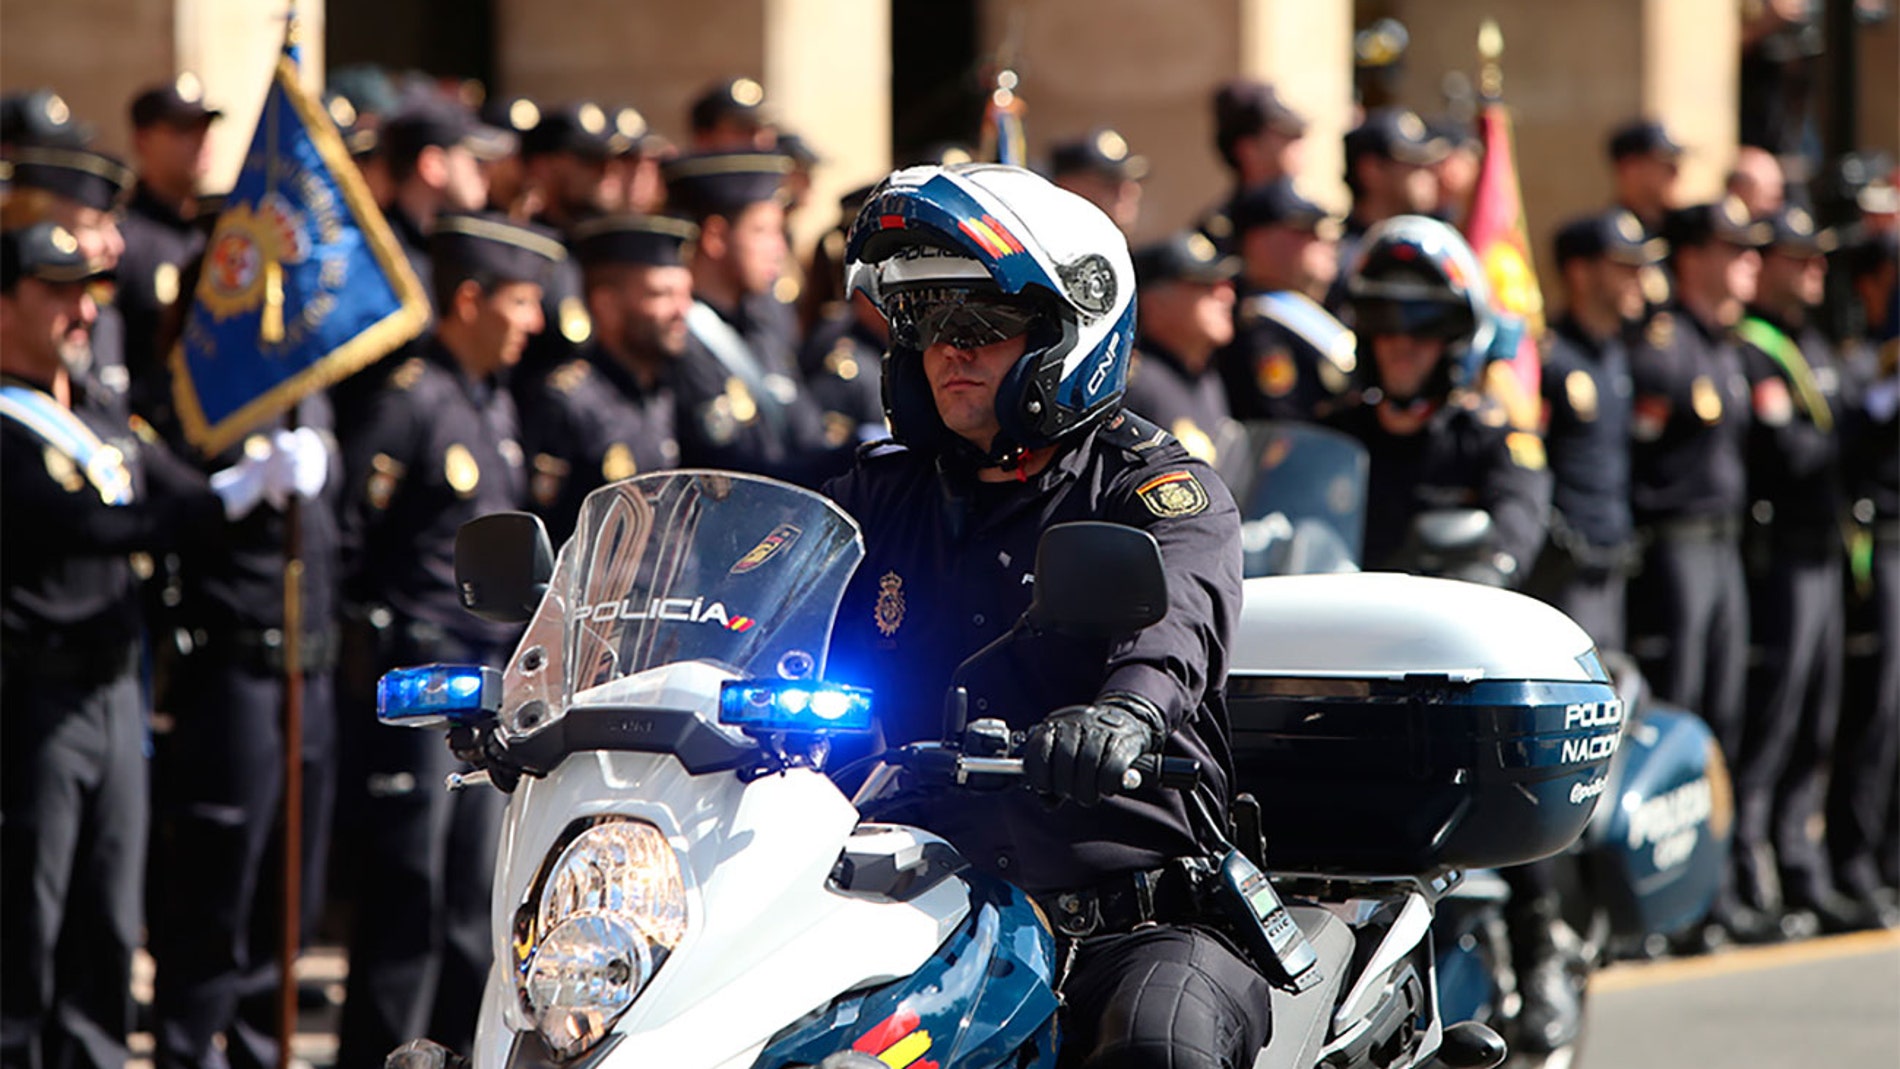 Policía Nacional en motocicleta